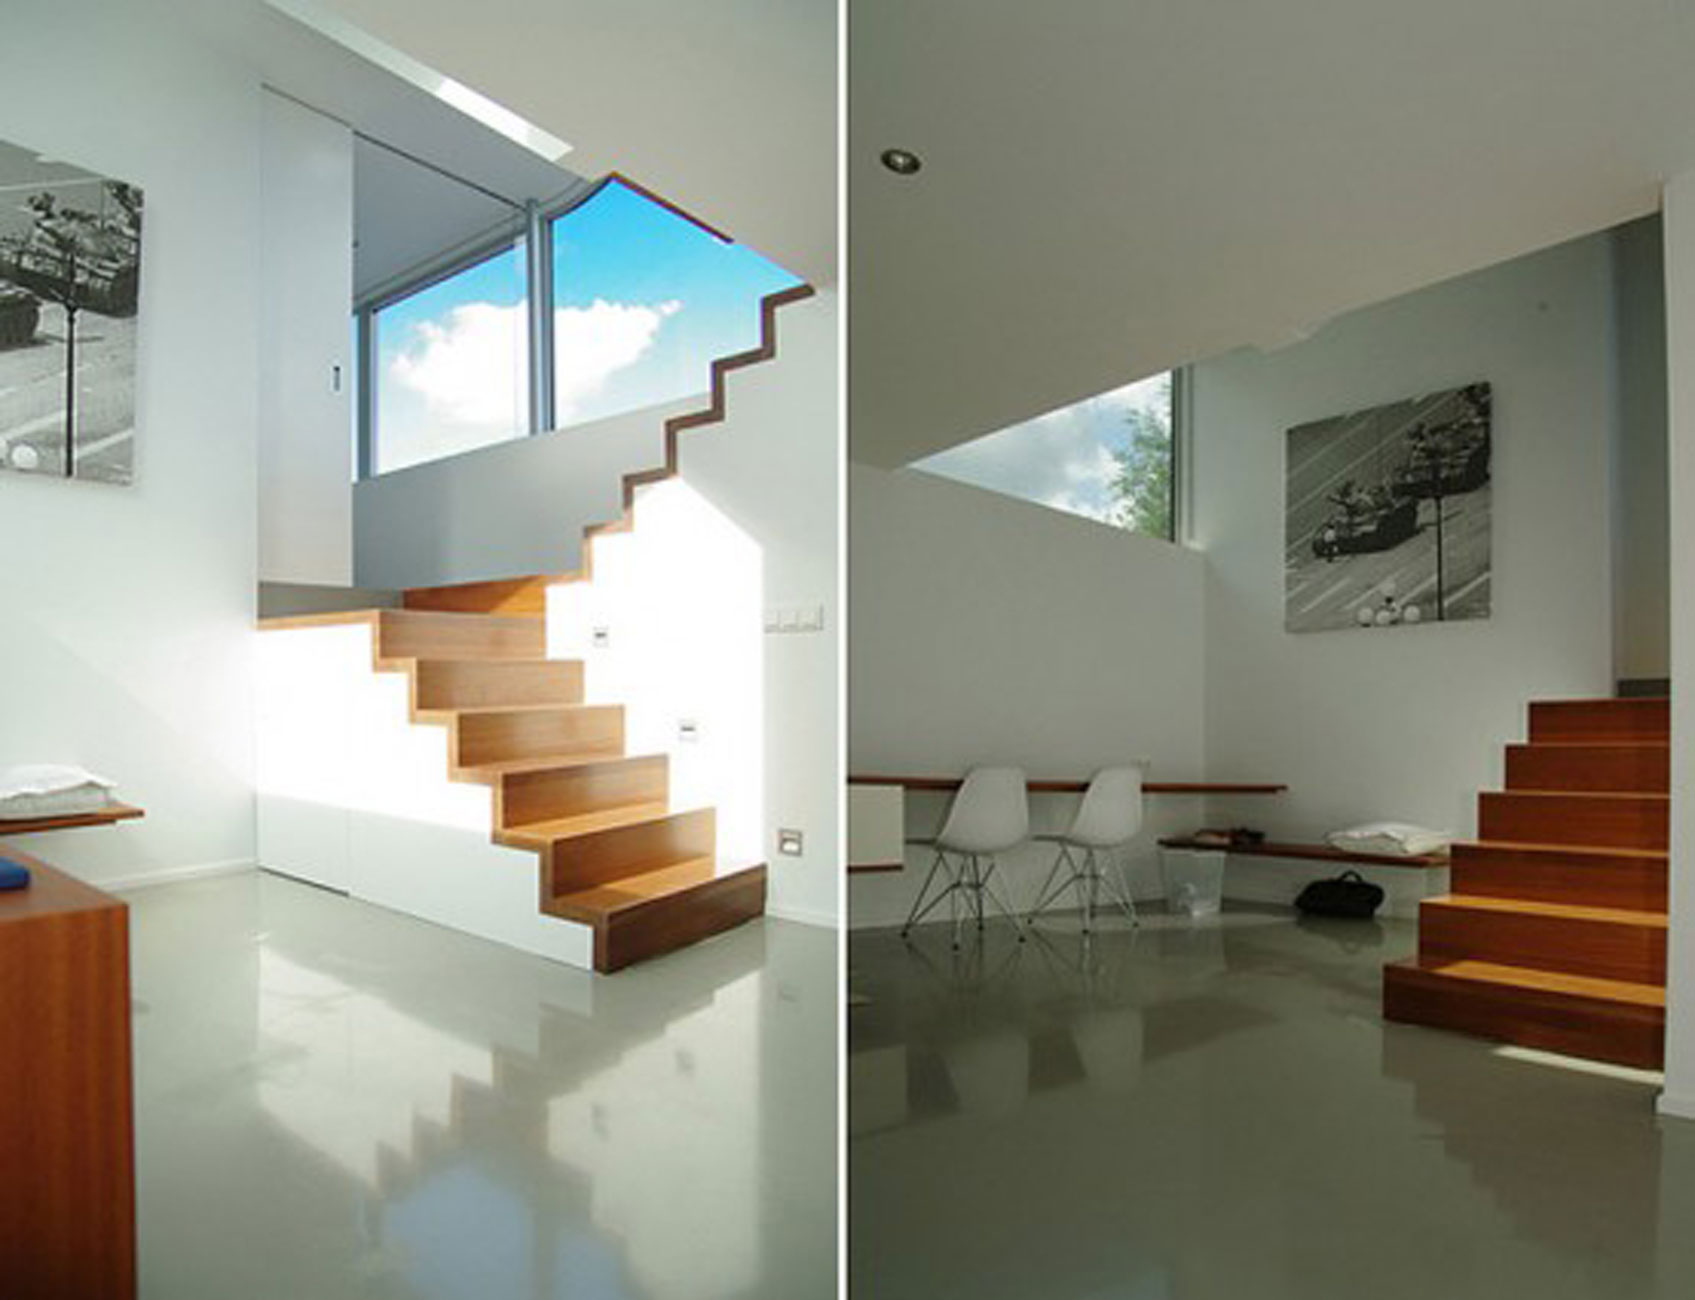 Tilbygg - hvor plassere vindu og innvendig trapp? - Fin trapp.jpg - generasjonsbolig